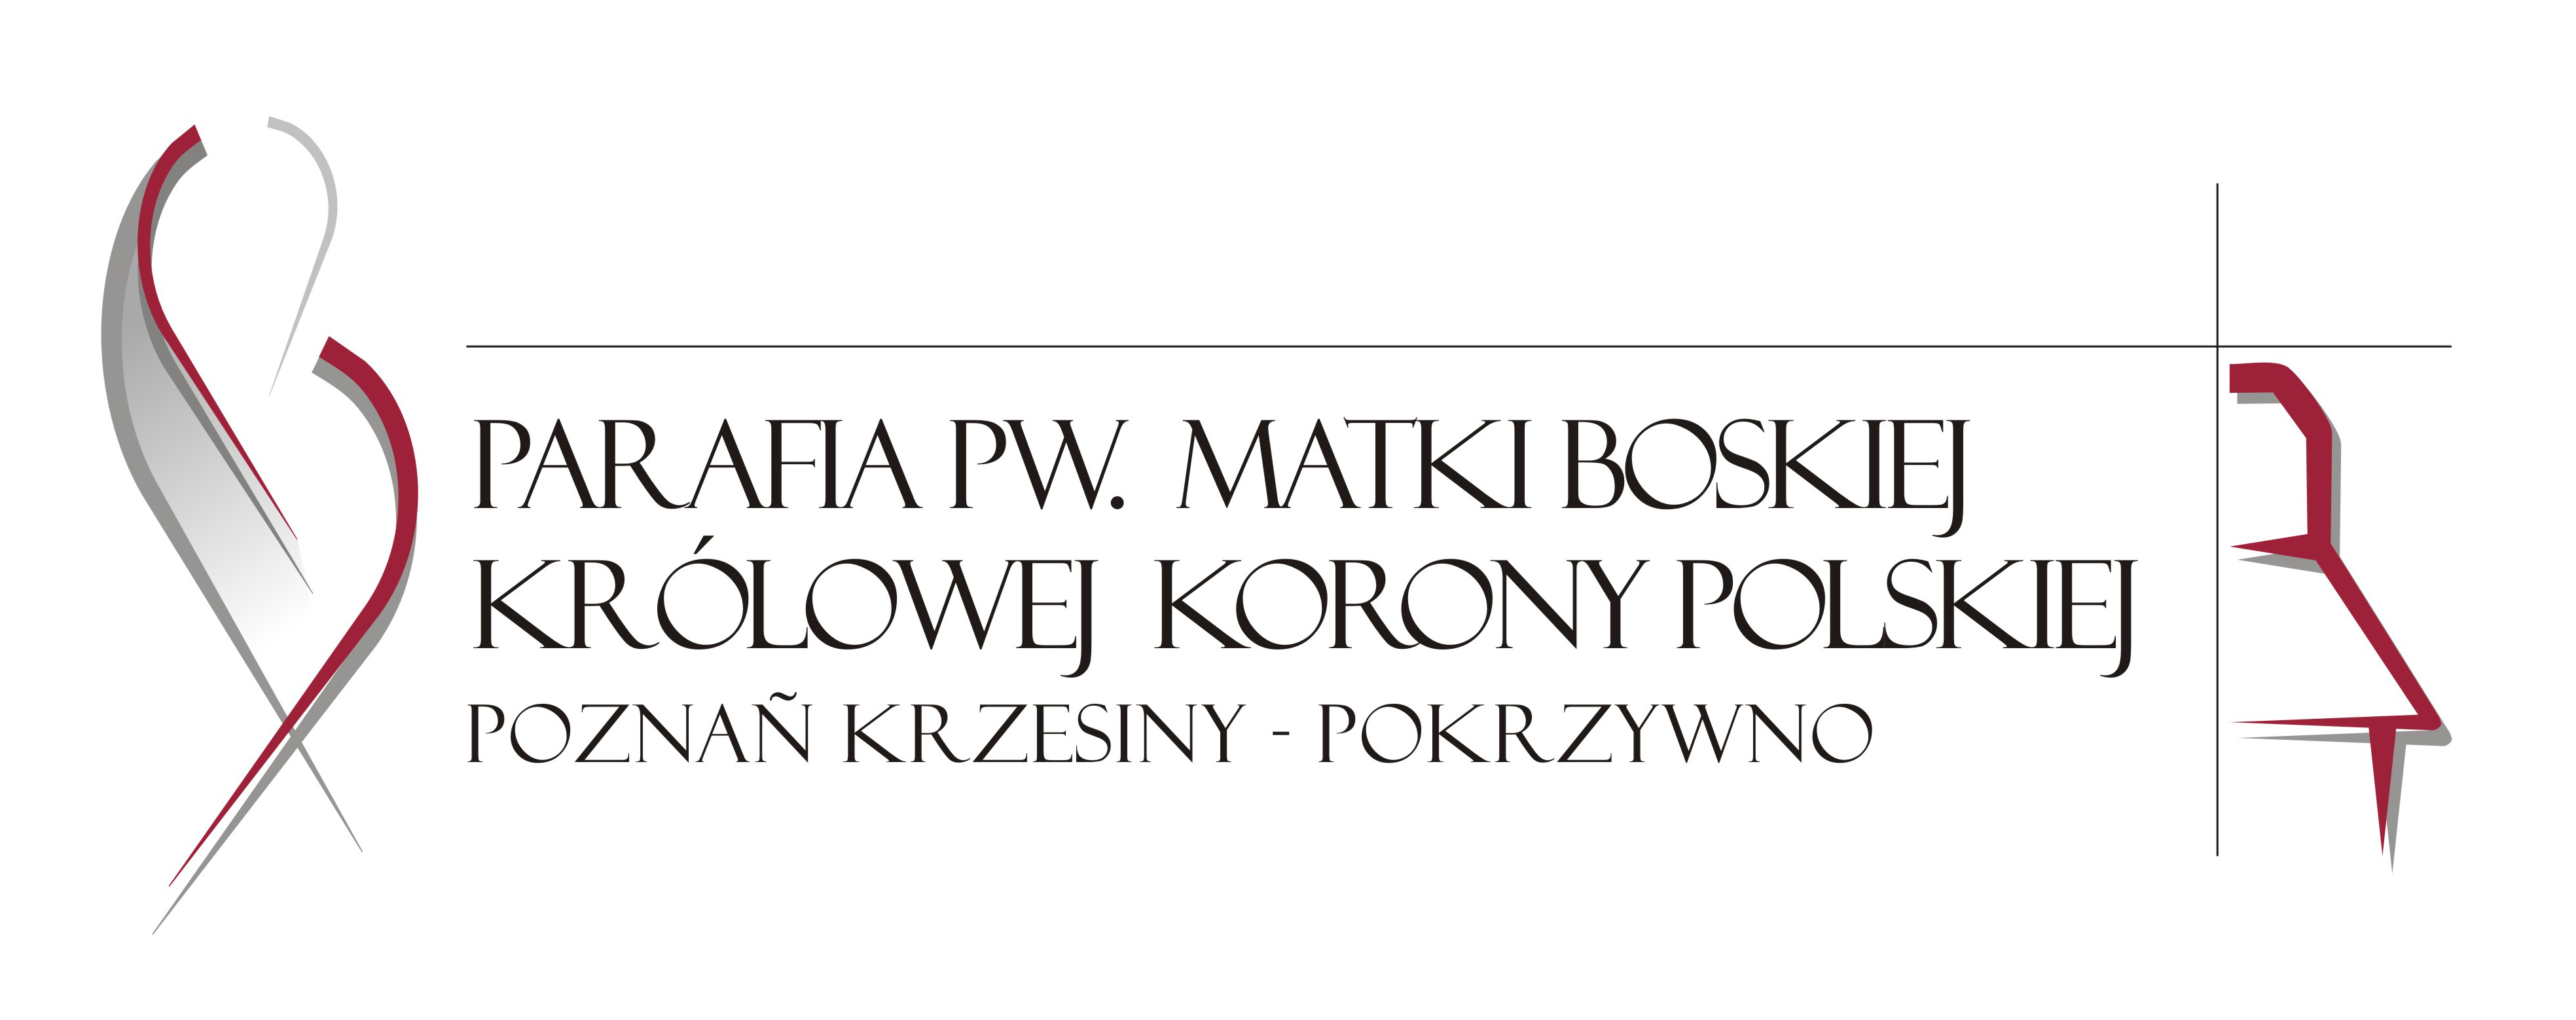 Parafia pw. Matki Boskiej Królowej Korony Polskiej Archidiecezja Poznańska